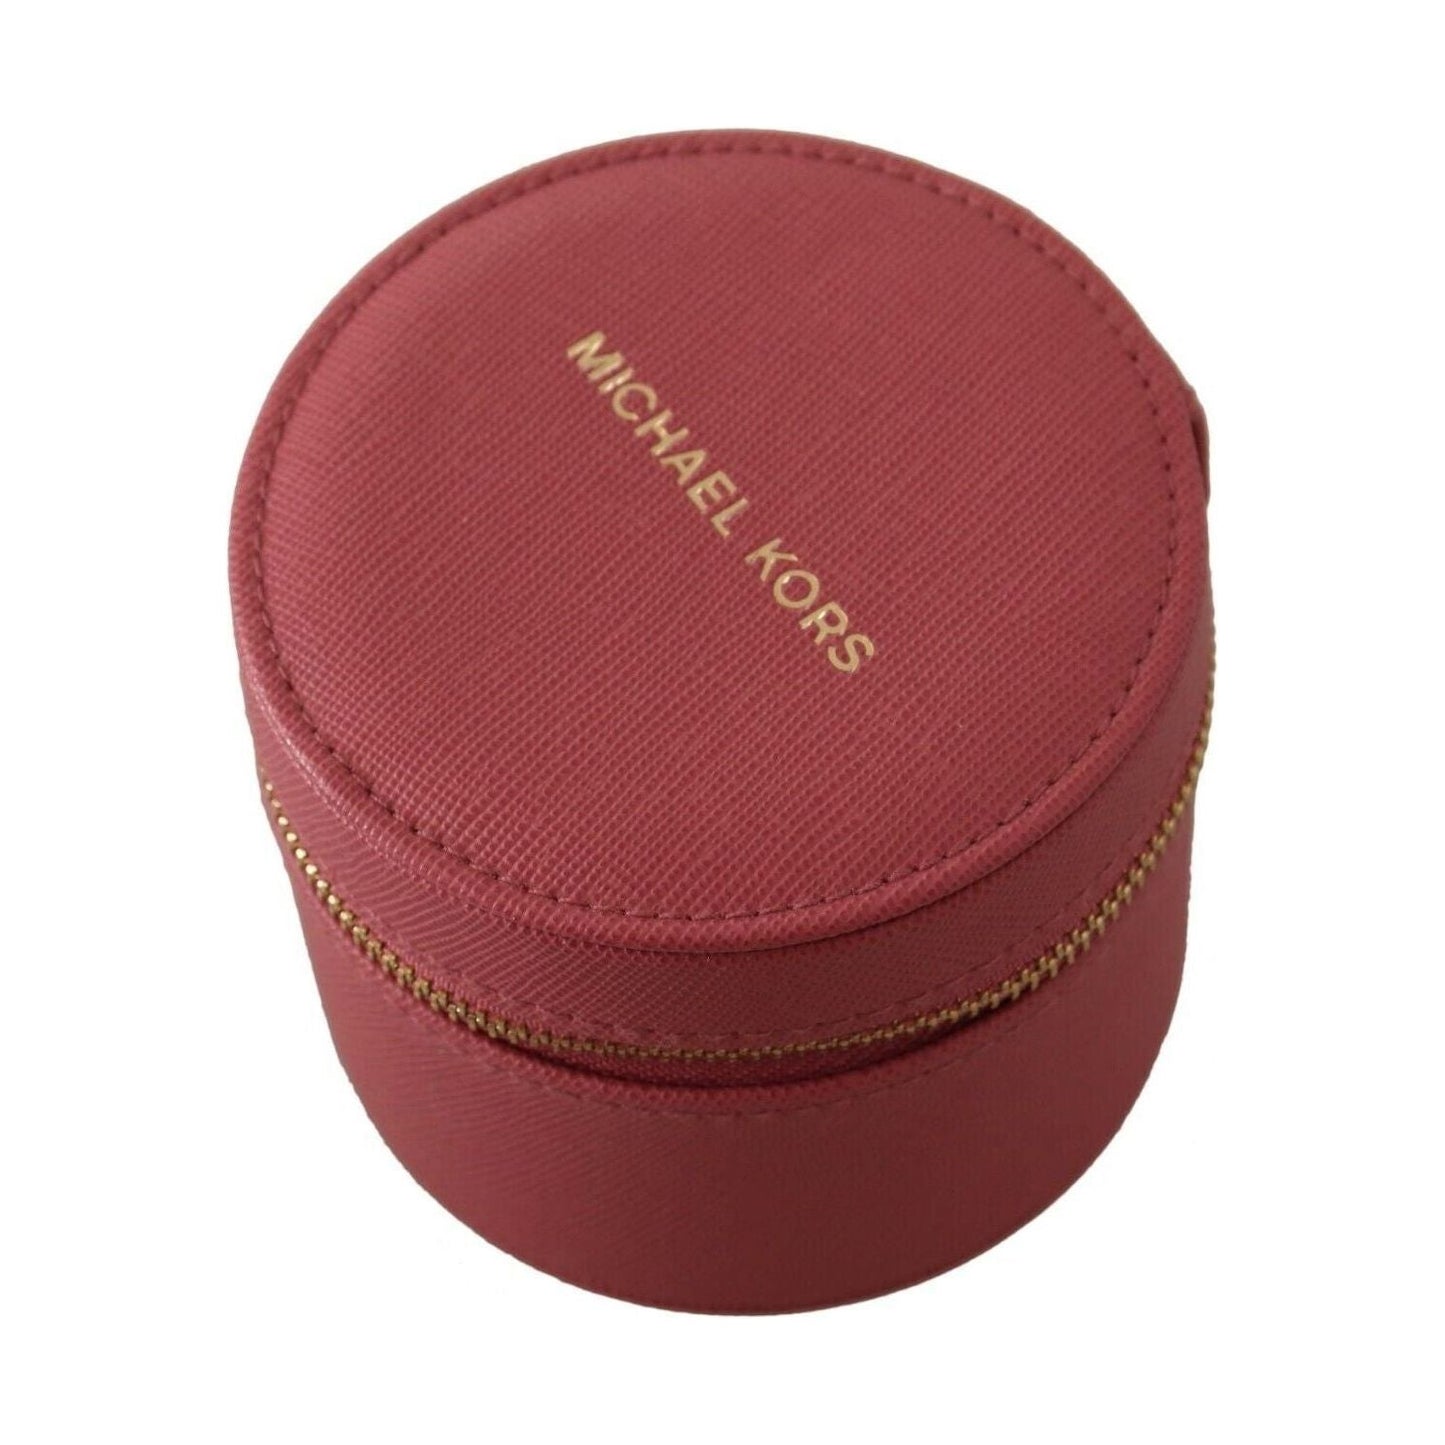 Michael Kors | Pink Leather Zip Round Pouch Purse Storage Wallet - McRichard Designer Brands